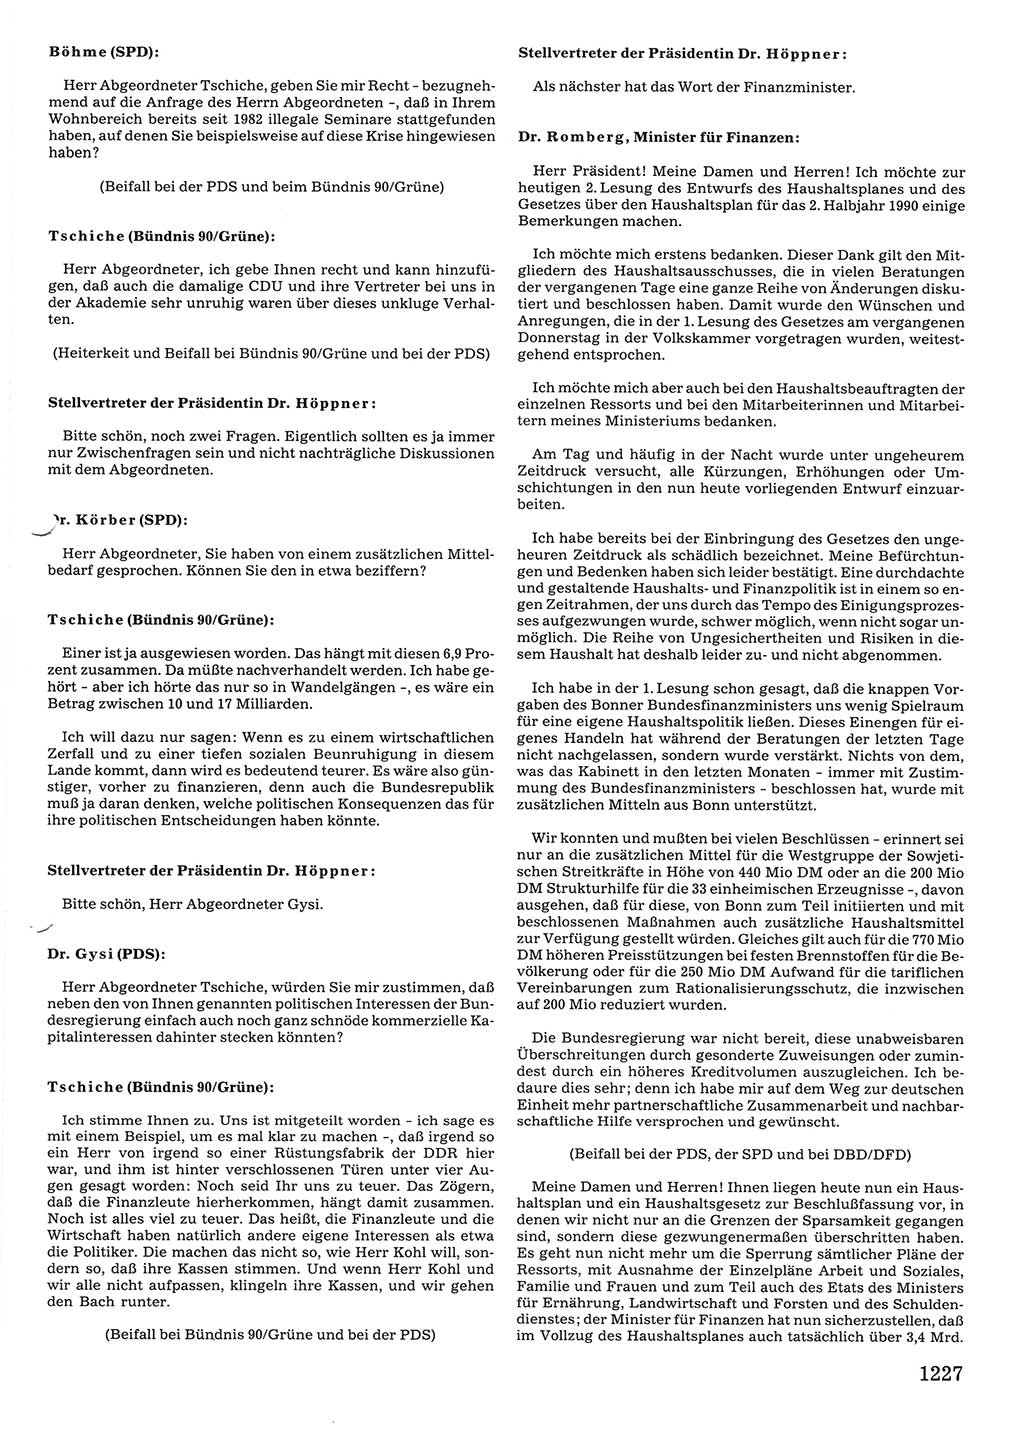 Tagungen der Volkskammer (VK) der Deutschen Demokratischen Republik (DDR), 10. Wahlperiode 1990, Seite 1227 (VK. DDR 10. WP. 1990, Prot. Tg. 1-38, 5.4.-2.10.1990, S. 1227)